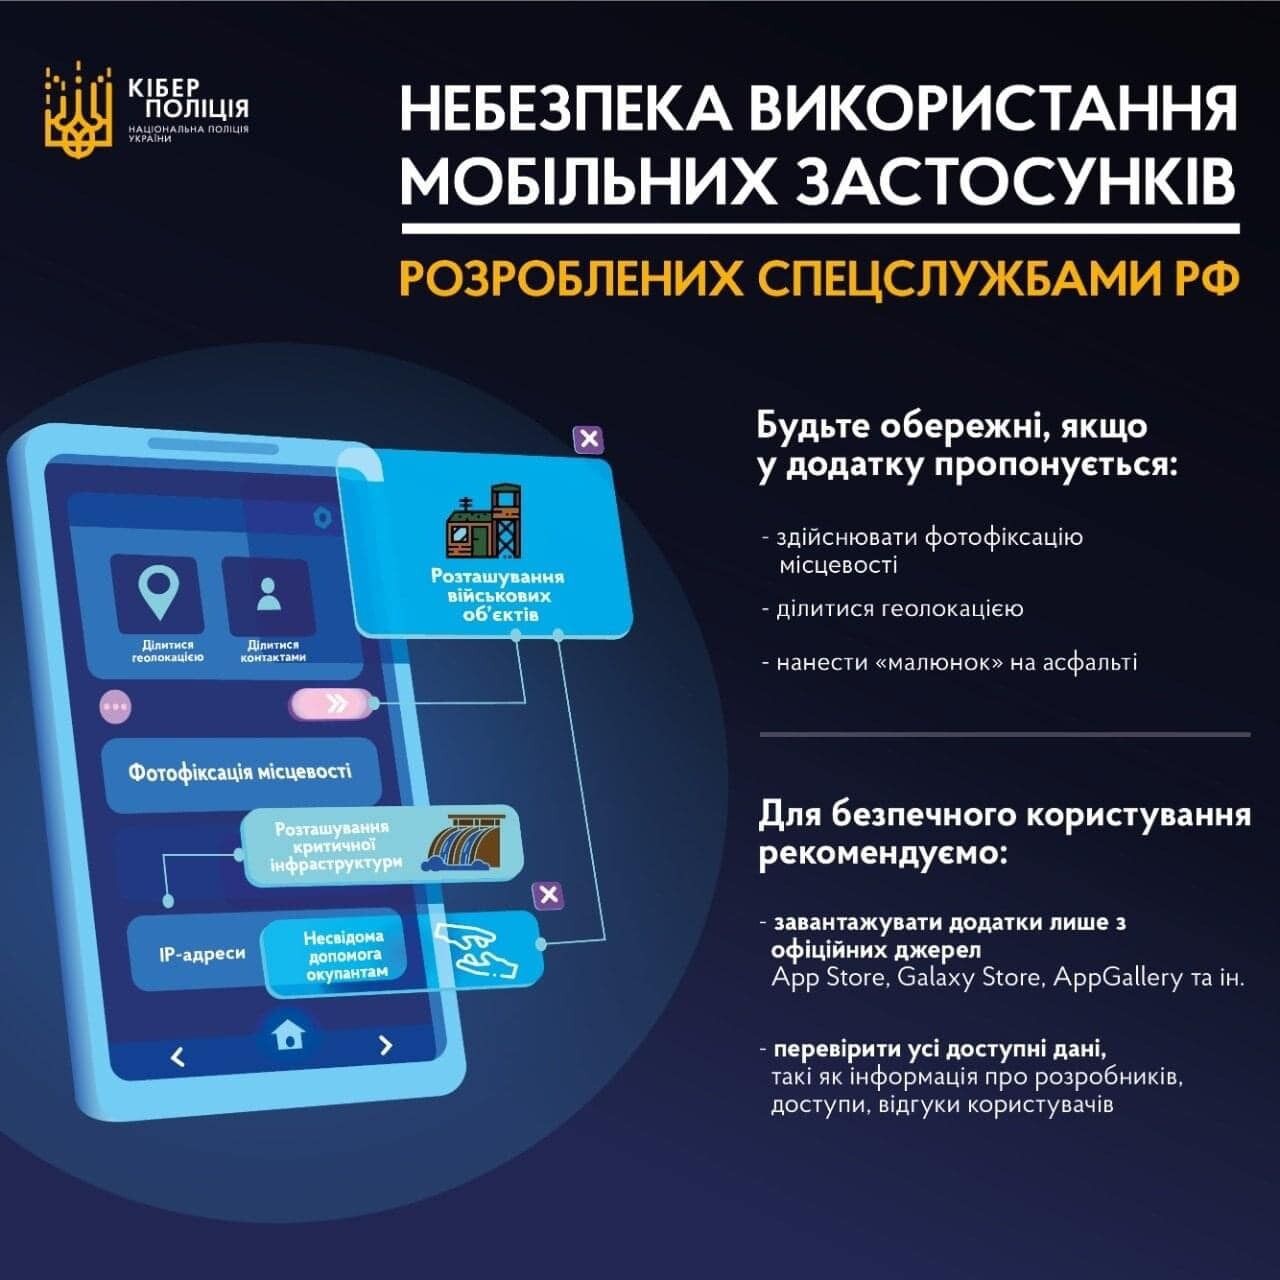 Спецслужбы РФ могут собирать данные через мобильные приложения